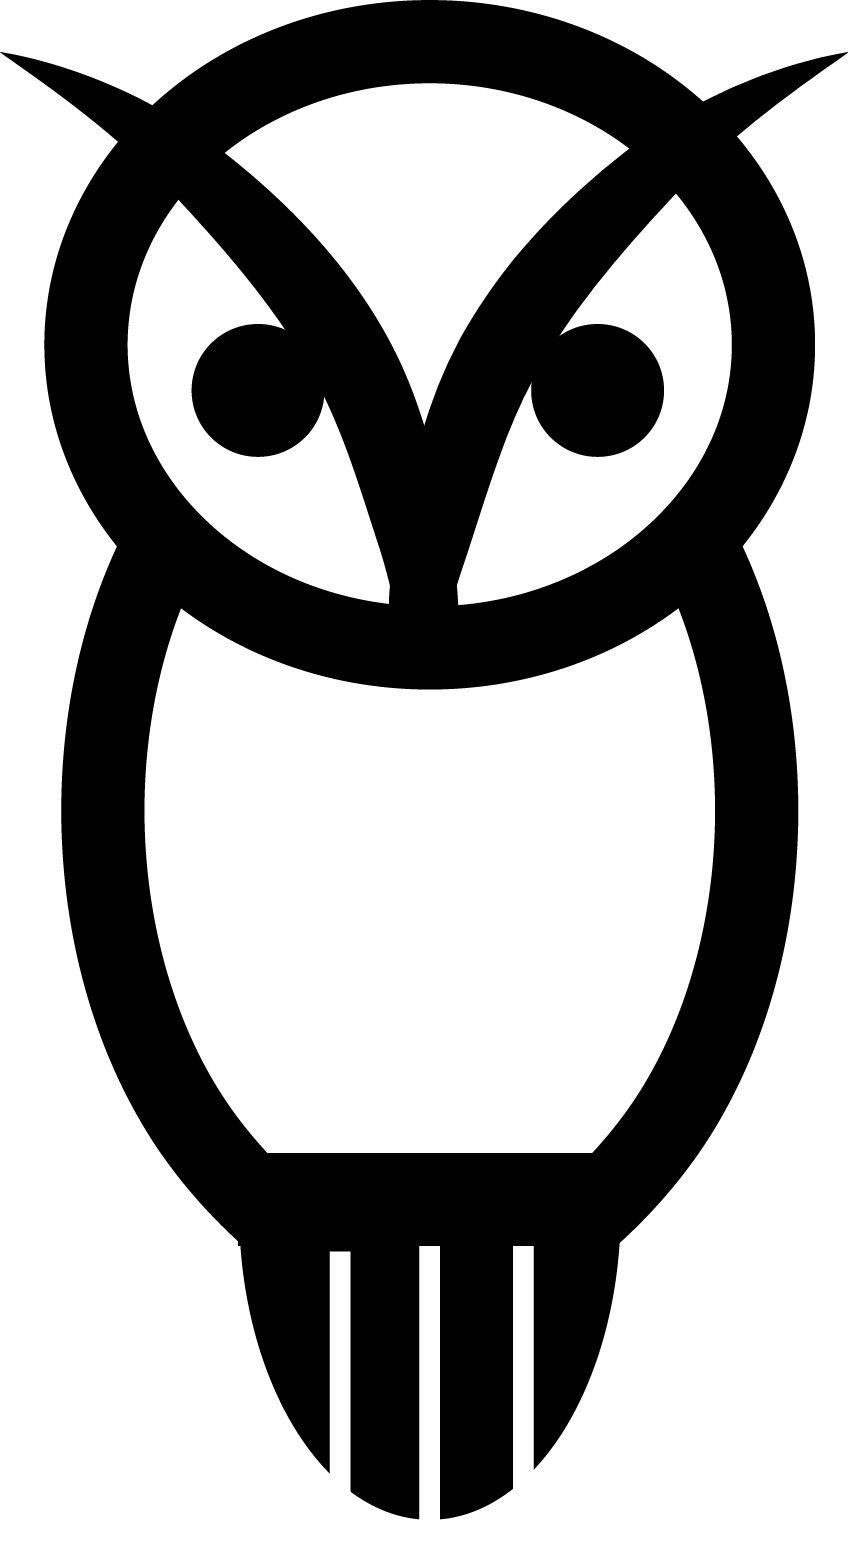 Athena Owl Logo - Athena Porteous - Owl logo